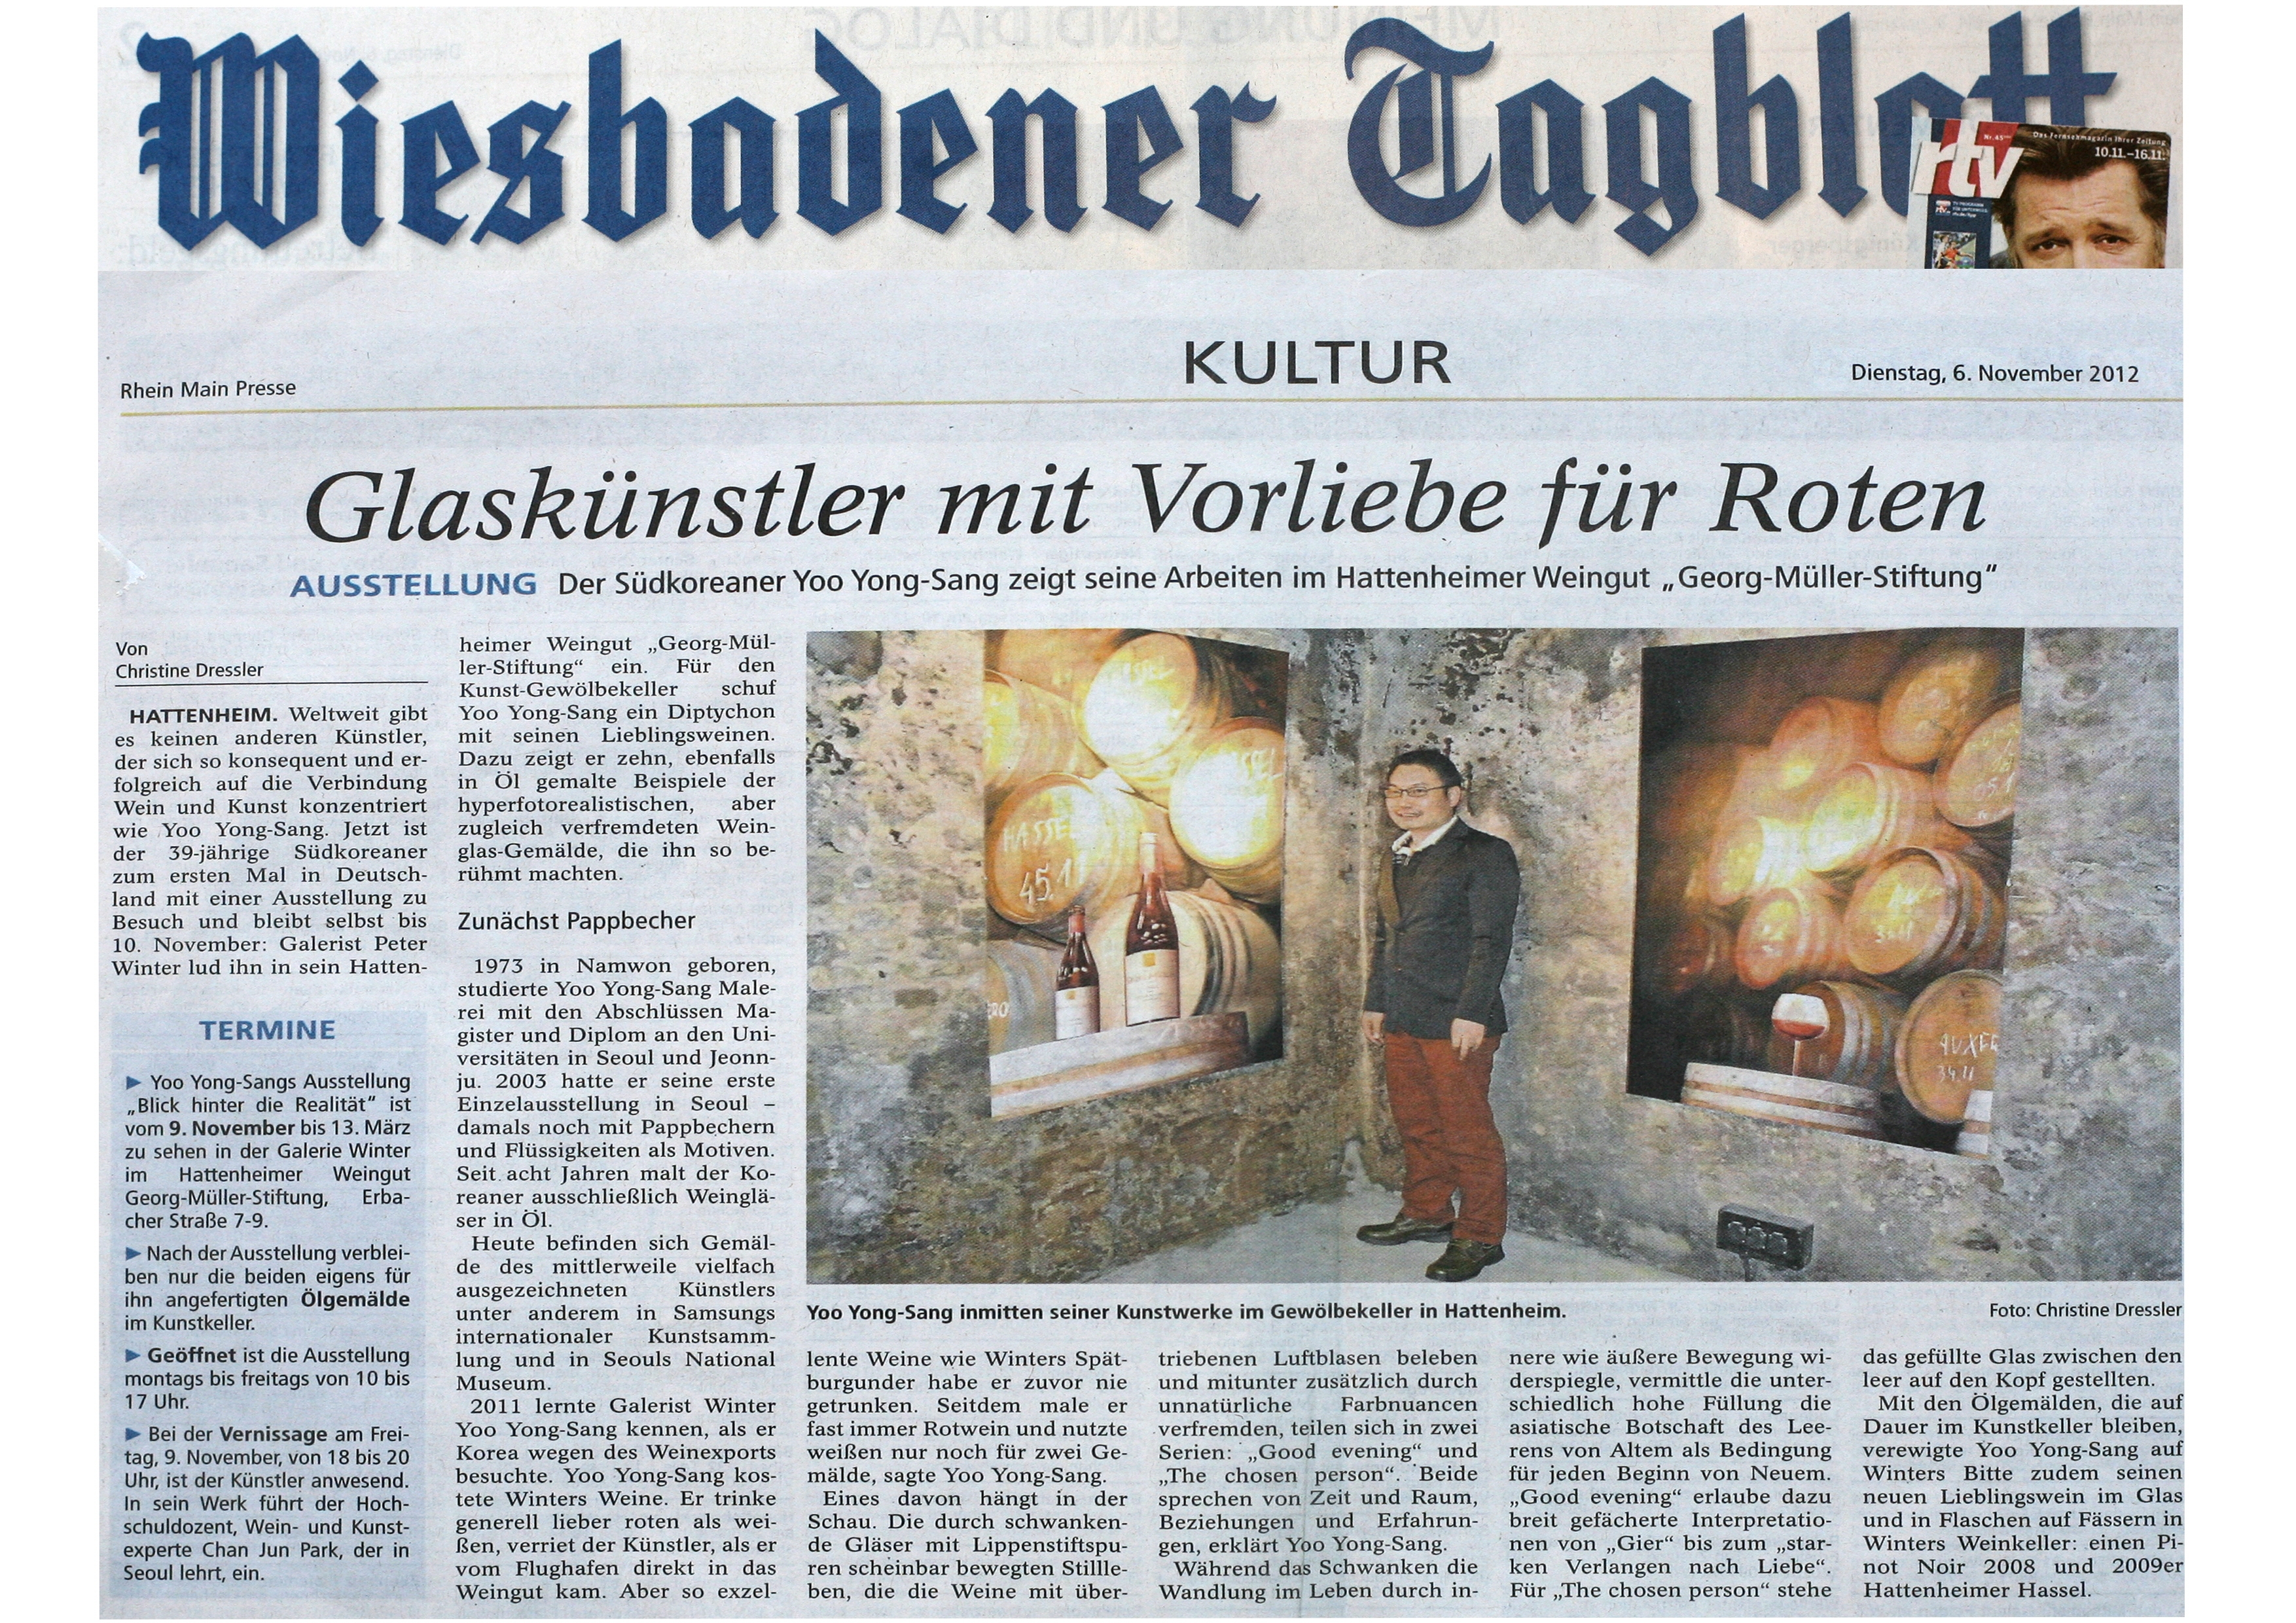 유용상 2012년 독일 뮤즘 소장 기념 전시 비스바덴 신문 기사.jpg